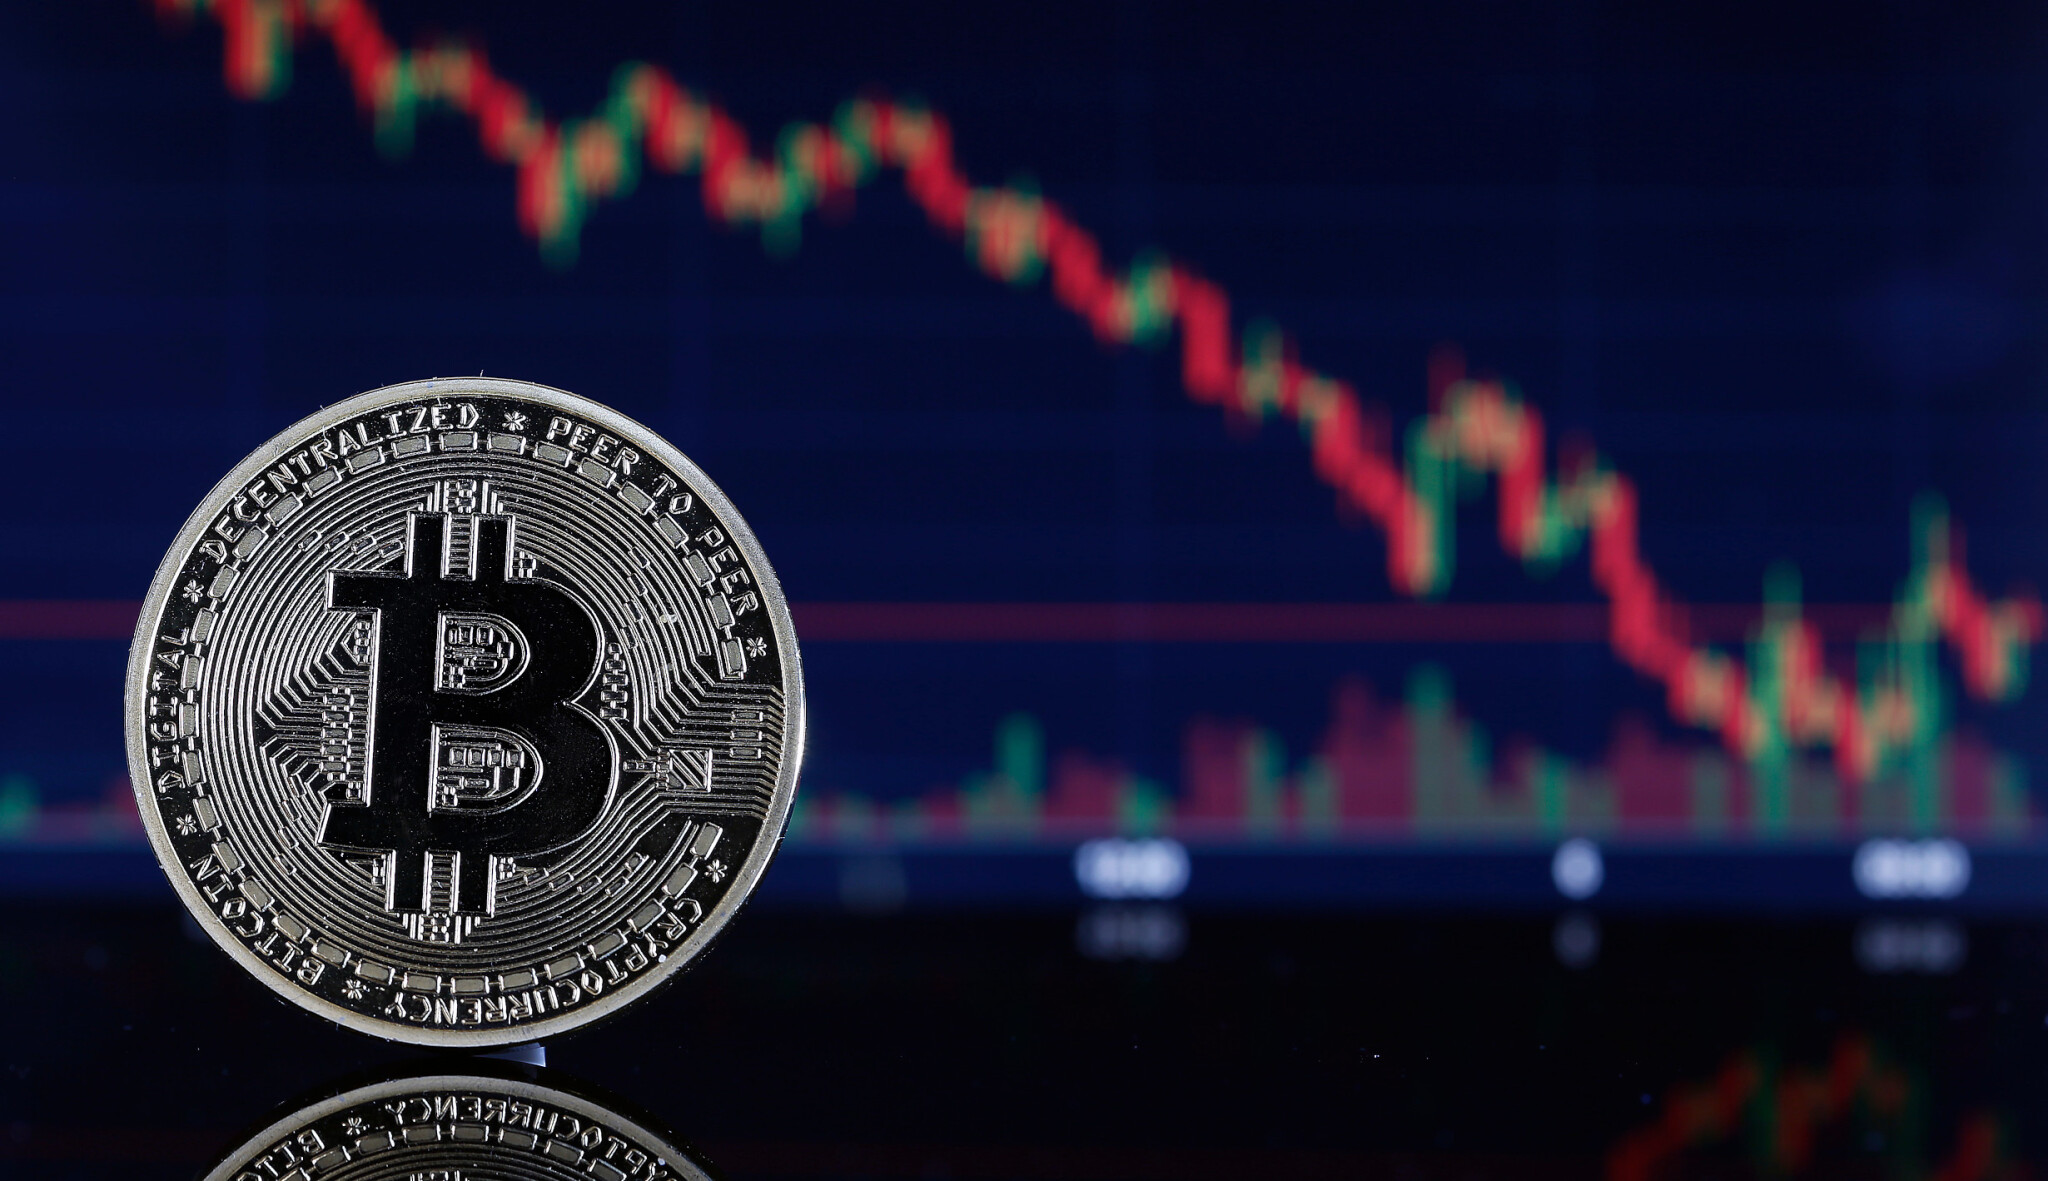 Cena bitcoinu překonala hranici 65 tisíc dolarů. V českých korunách je nejdražší v historii